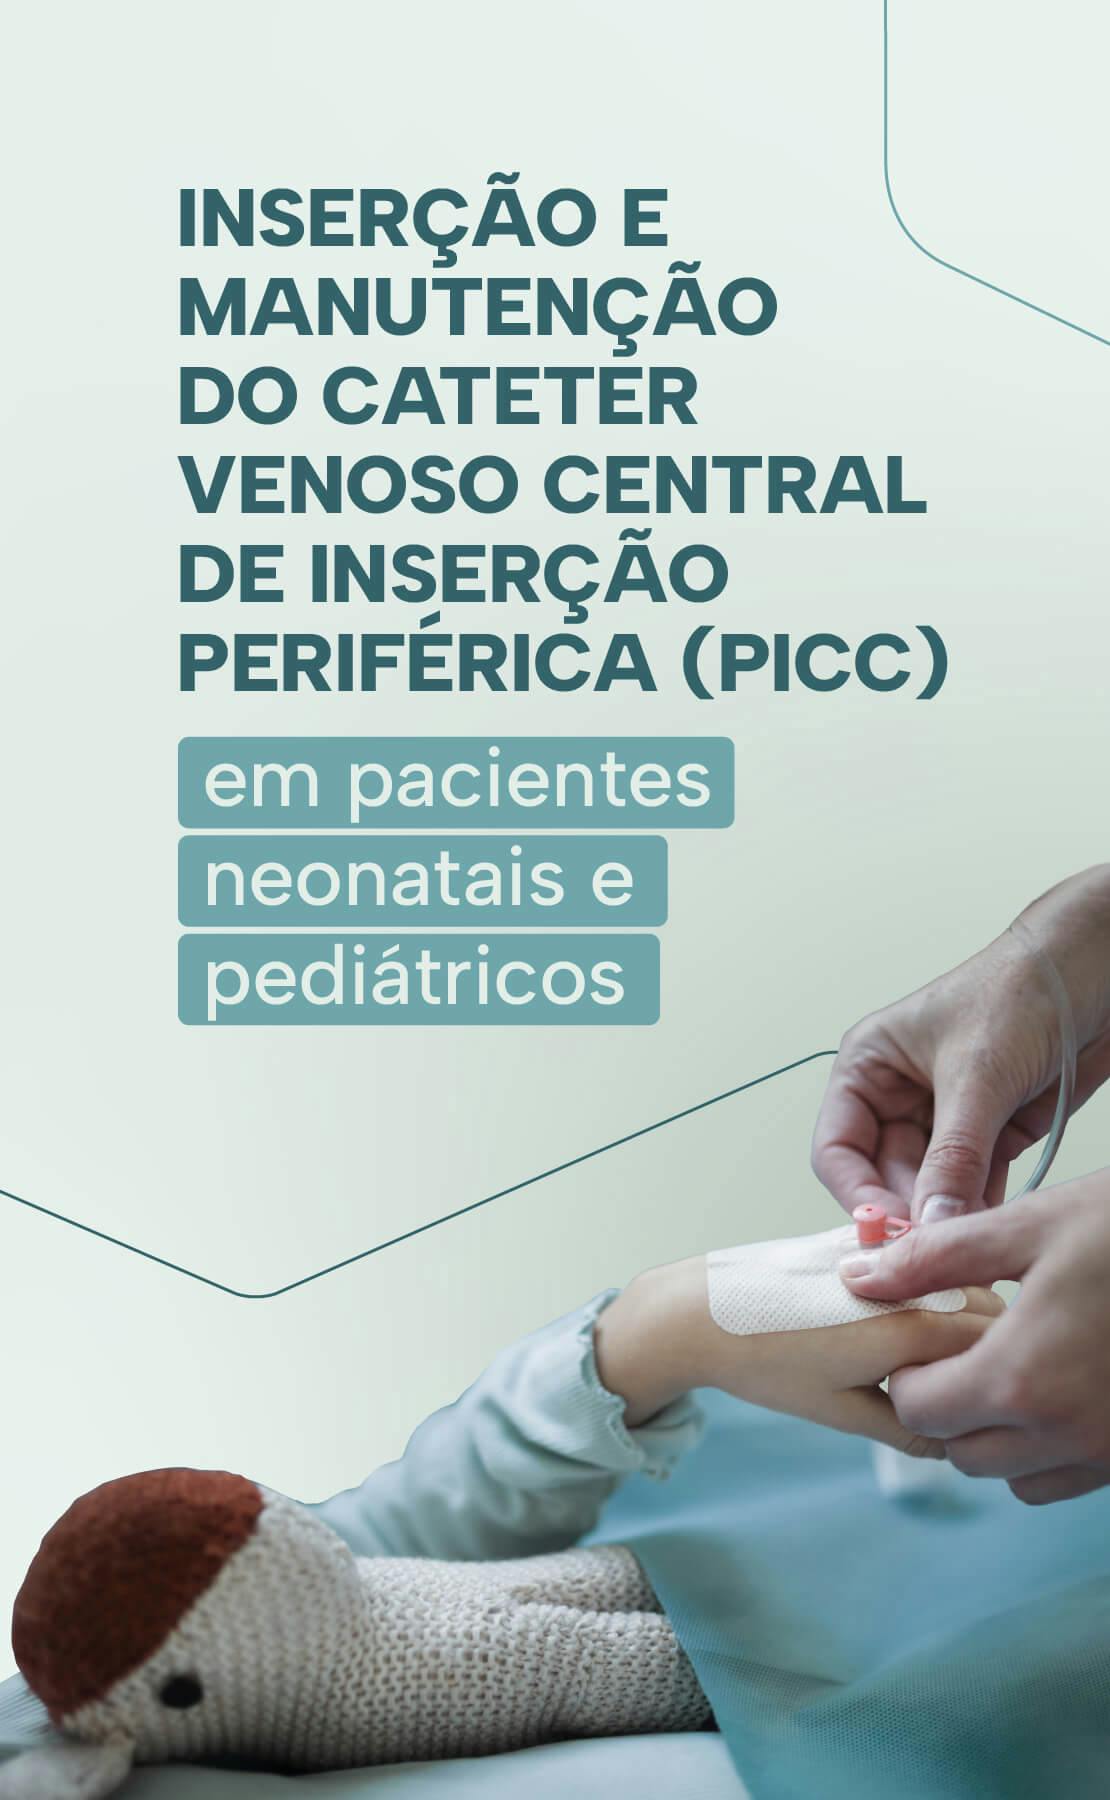 Inserção e manutenção do cateter venoso central de inserção periférica- PICC em pacientes neonatais e pediátricos